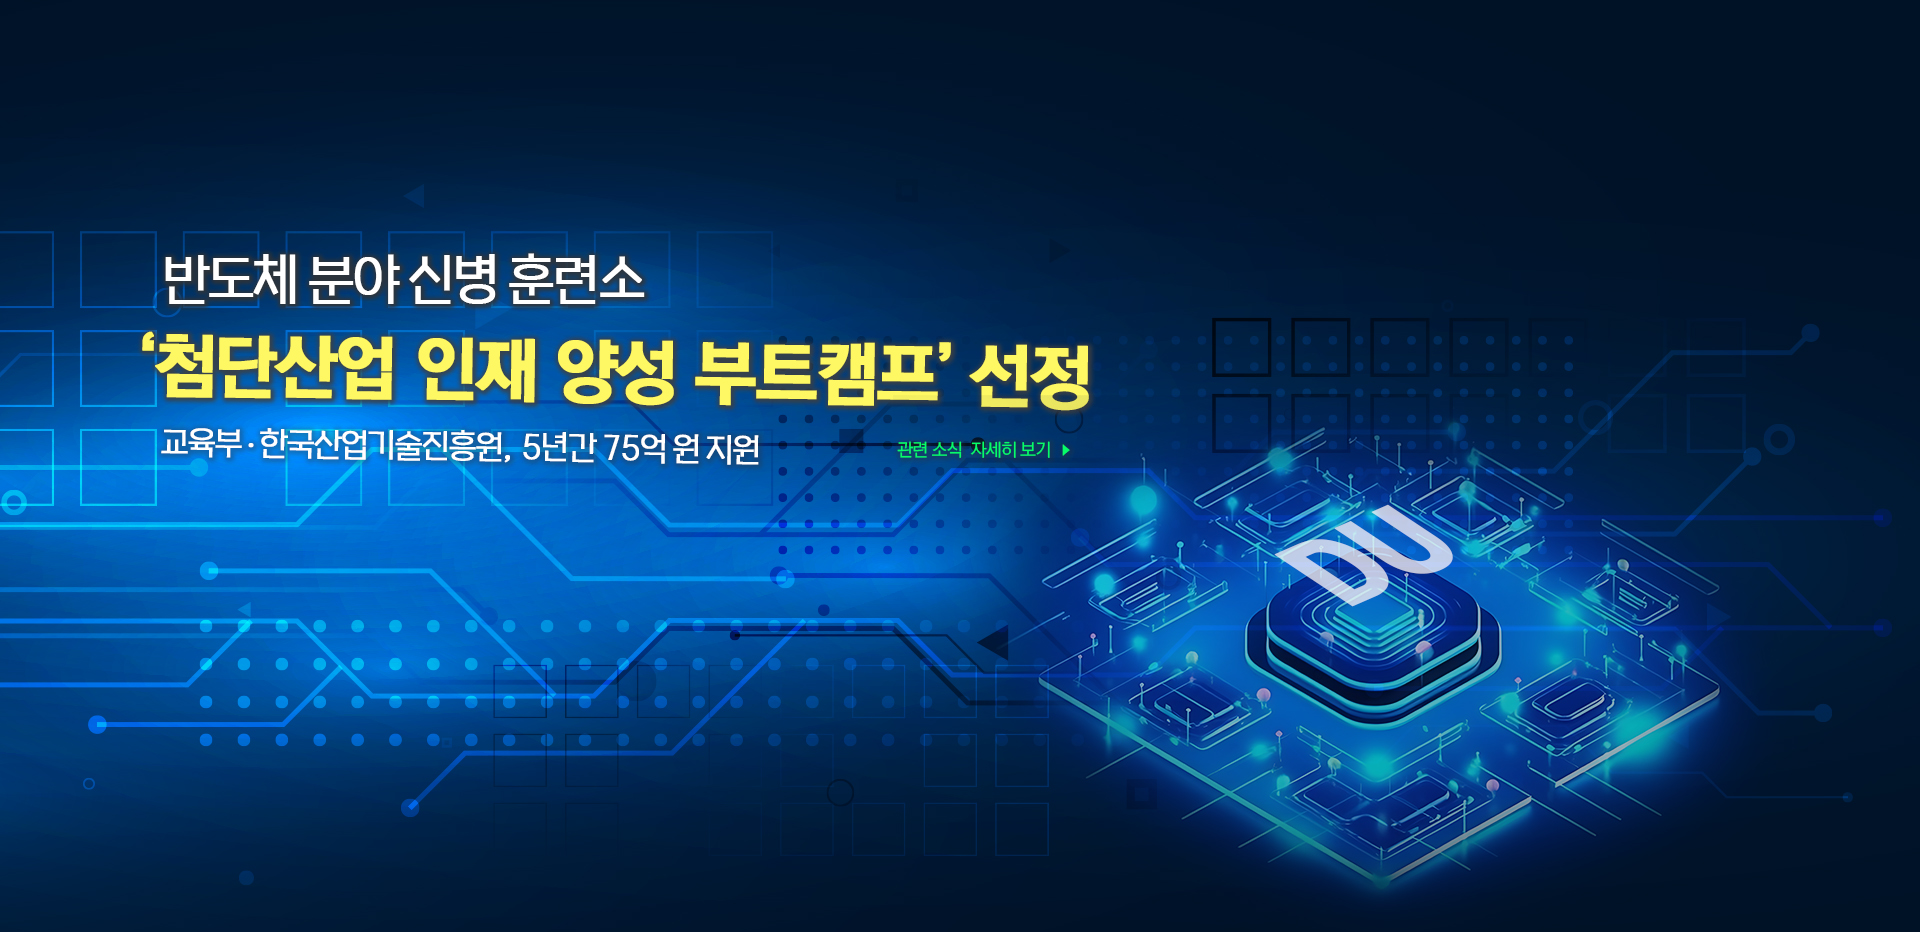 ‘첨단산업 인재 양성 부트캠프’ 선정